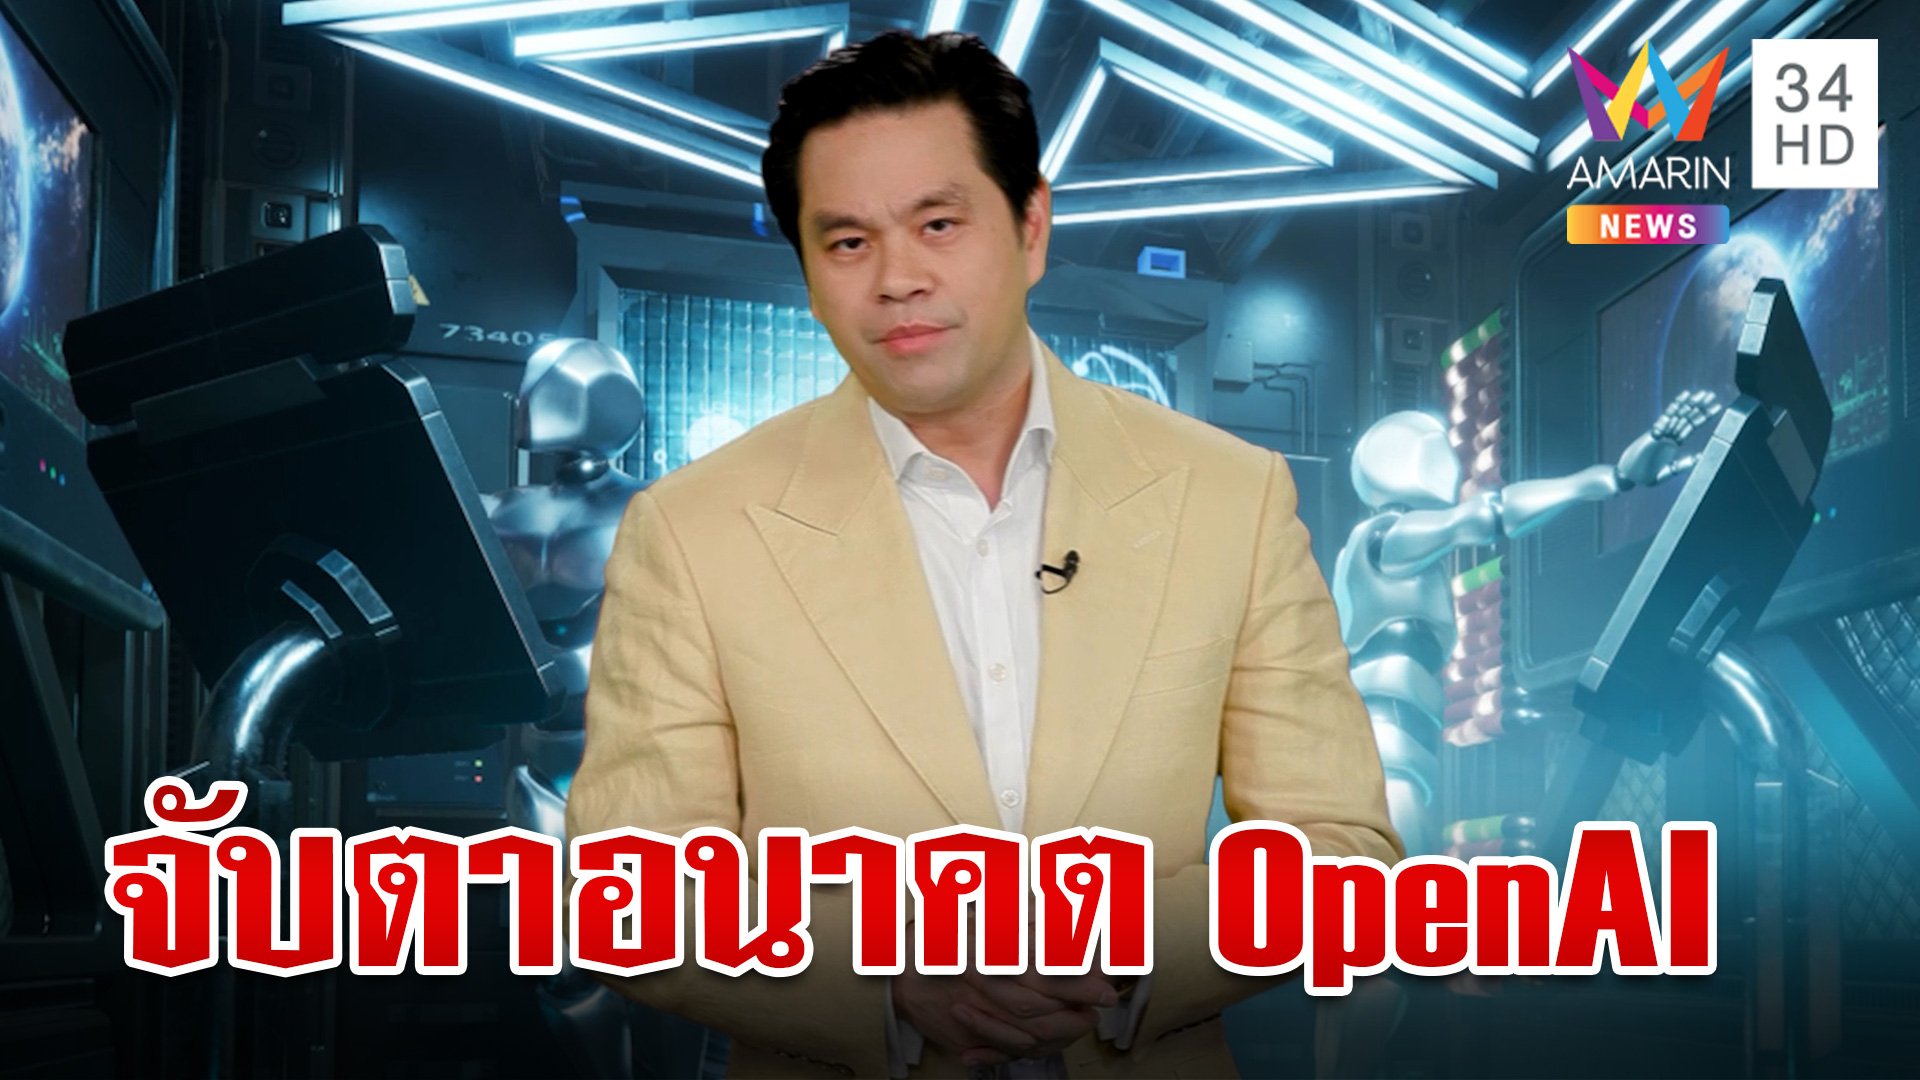 รู้จัก "แซม อัลต์แมน" ซีอีโอคนปัจจุบันของ OpenAI เกี่ยวข้องอย่างไรกับไทย | ทุบโต๊ะข่าว | 1 ธ.ค. 66 | AMARIN TVHD34